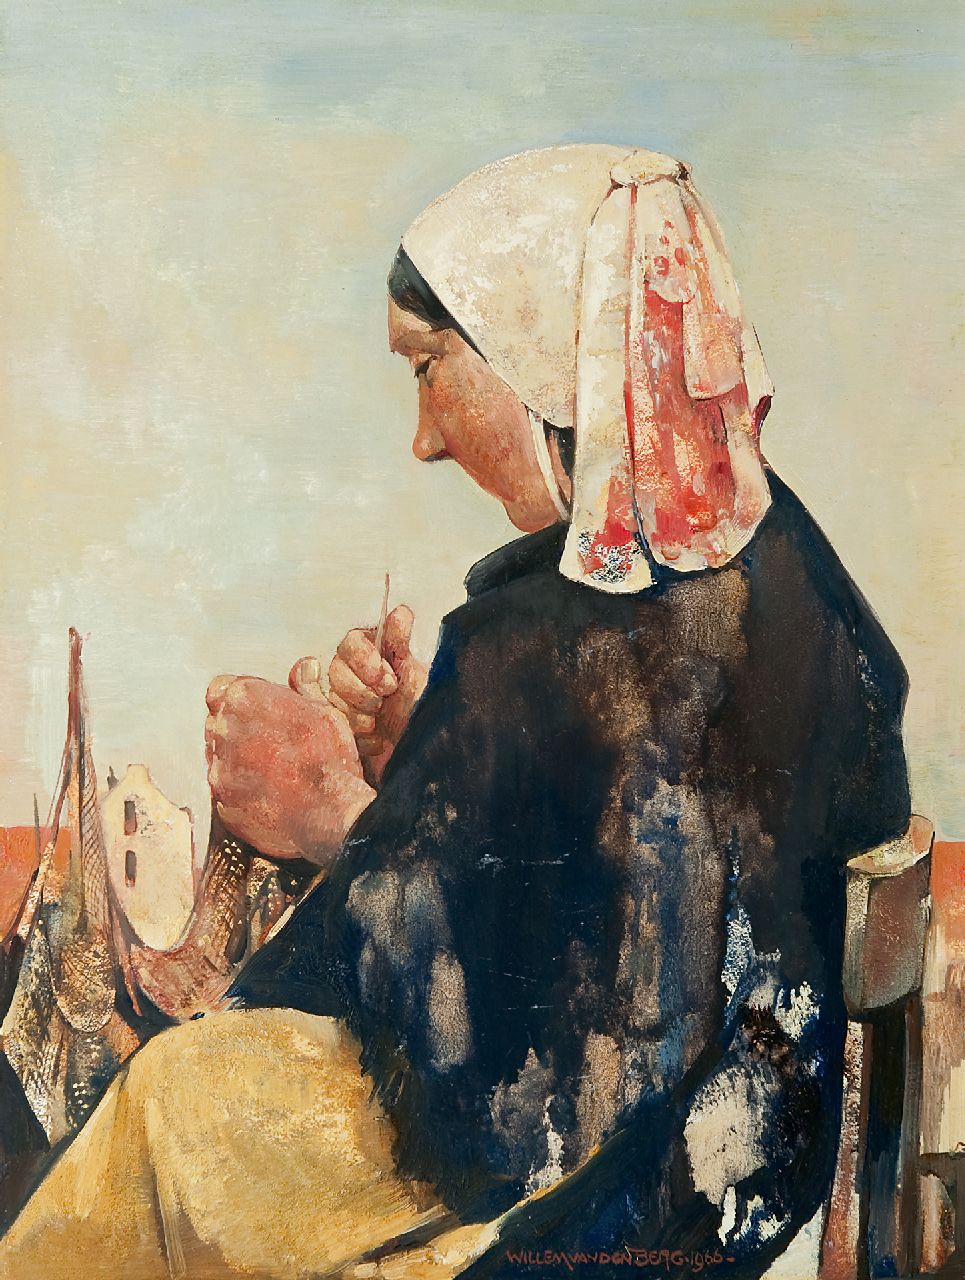 Berg W.H. van den | 'Willem' Hendrik van den Berg | Schilderijen te koop aangeboden | Nettenboetster, Scheveningen, olieverf op schildersboard 39,8 x 29,9 cm, gesigneerd rechts van het midden. en gedateerd 1966